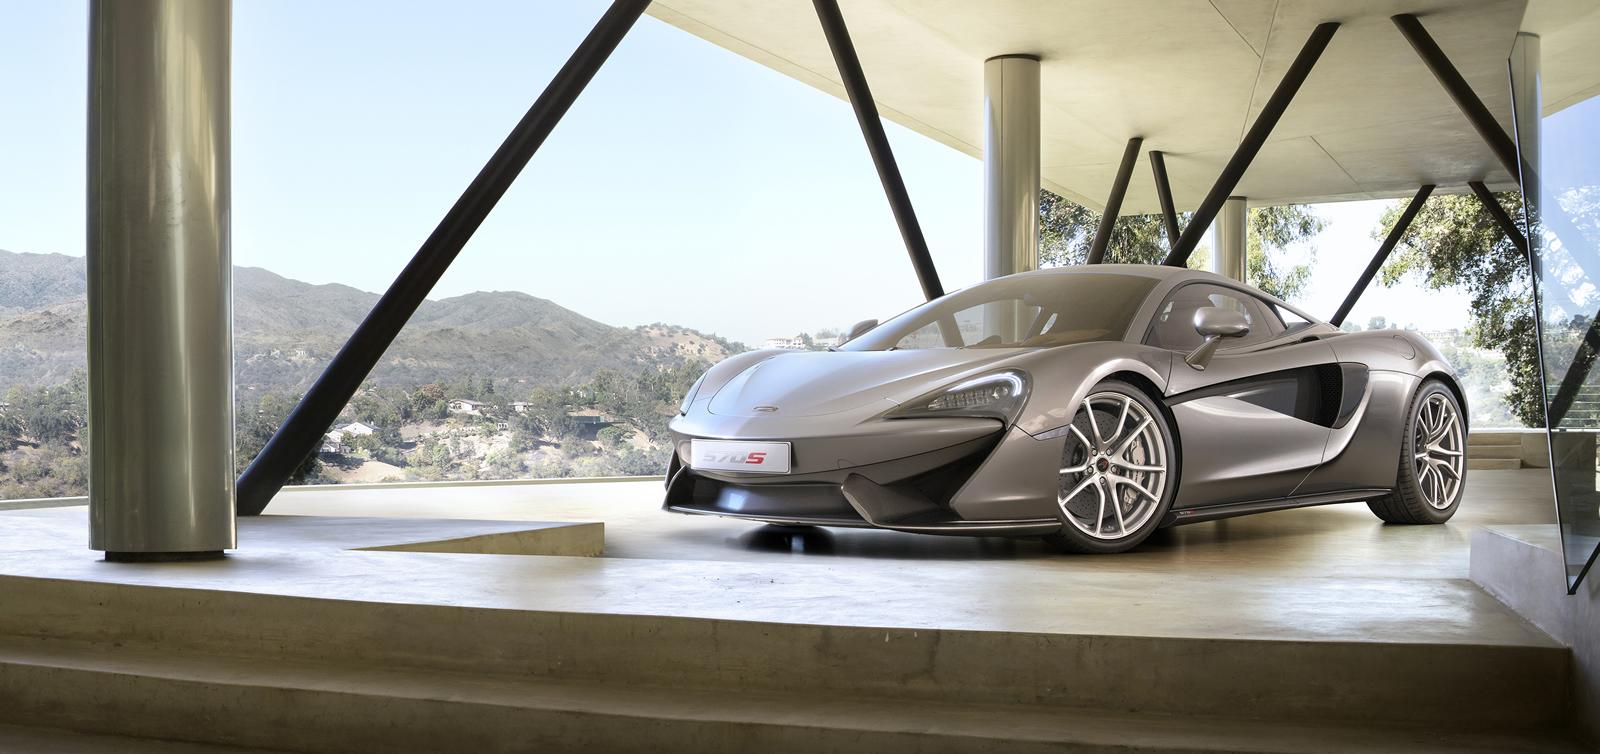 McLaren разкри новия си спортист - 570S Coupe (галерия)